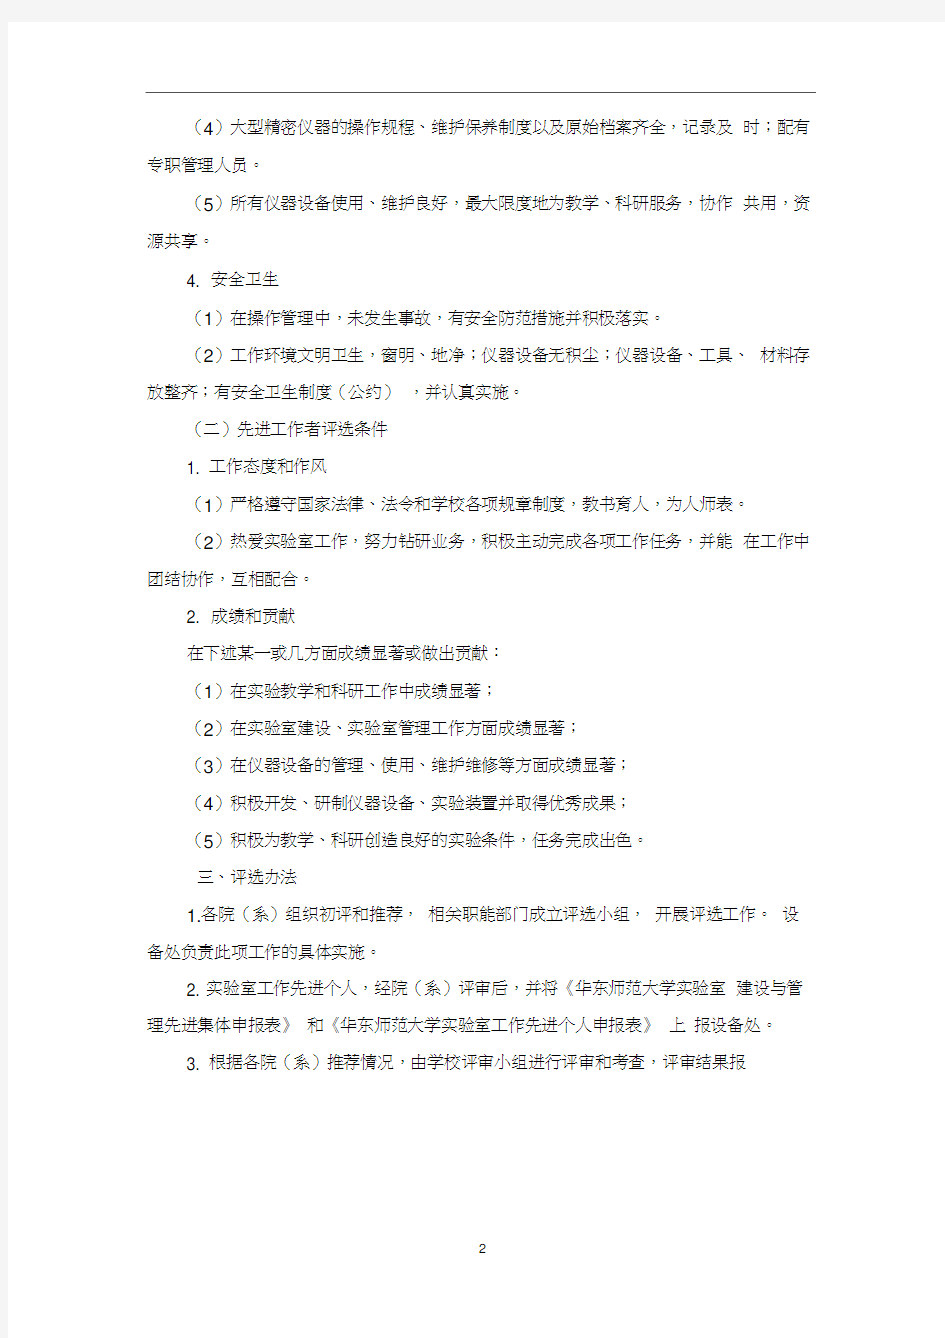 北京大学试验室工作先进集体和先进工作者评选办法-华东师范大学